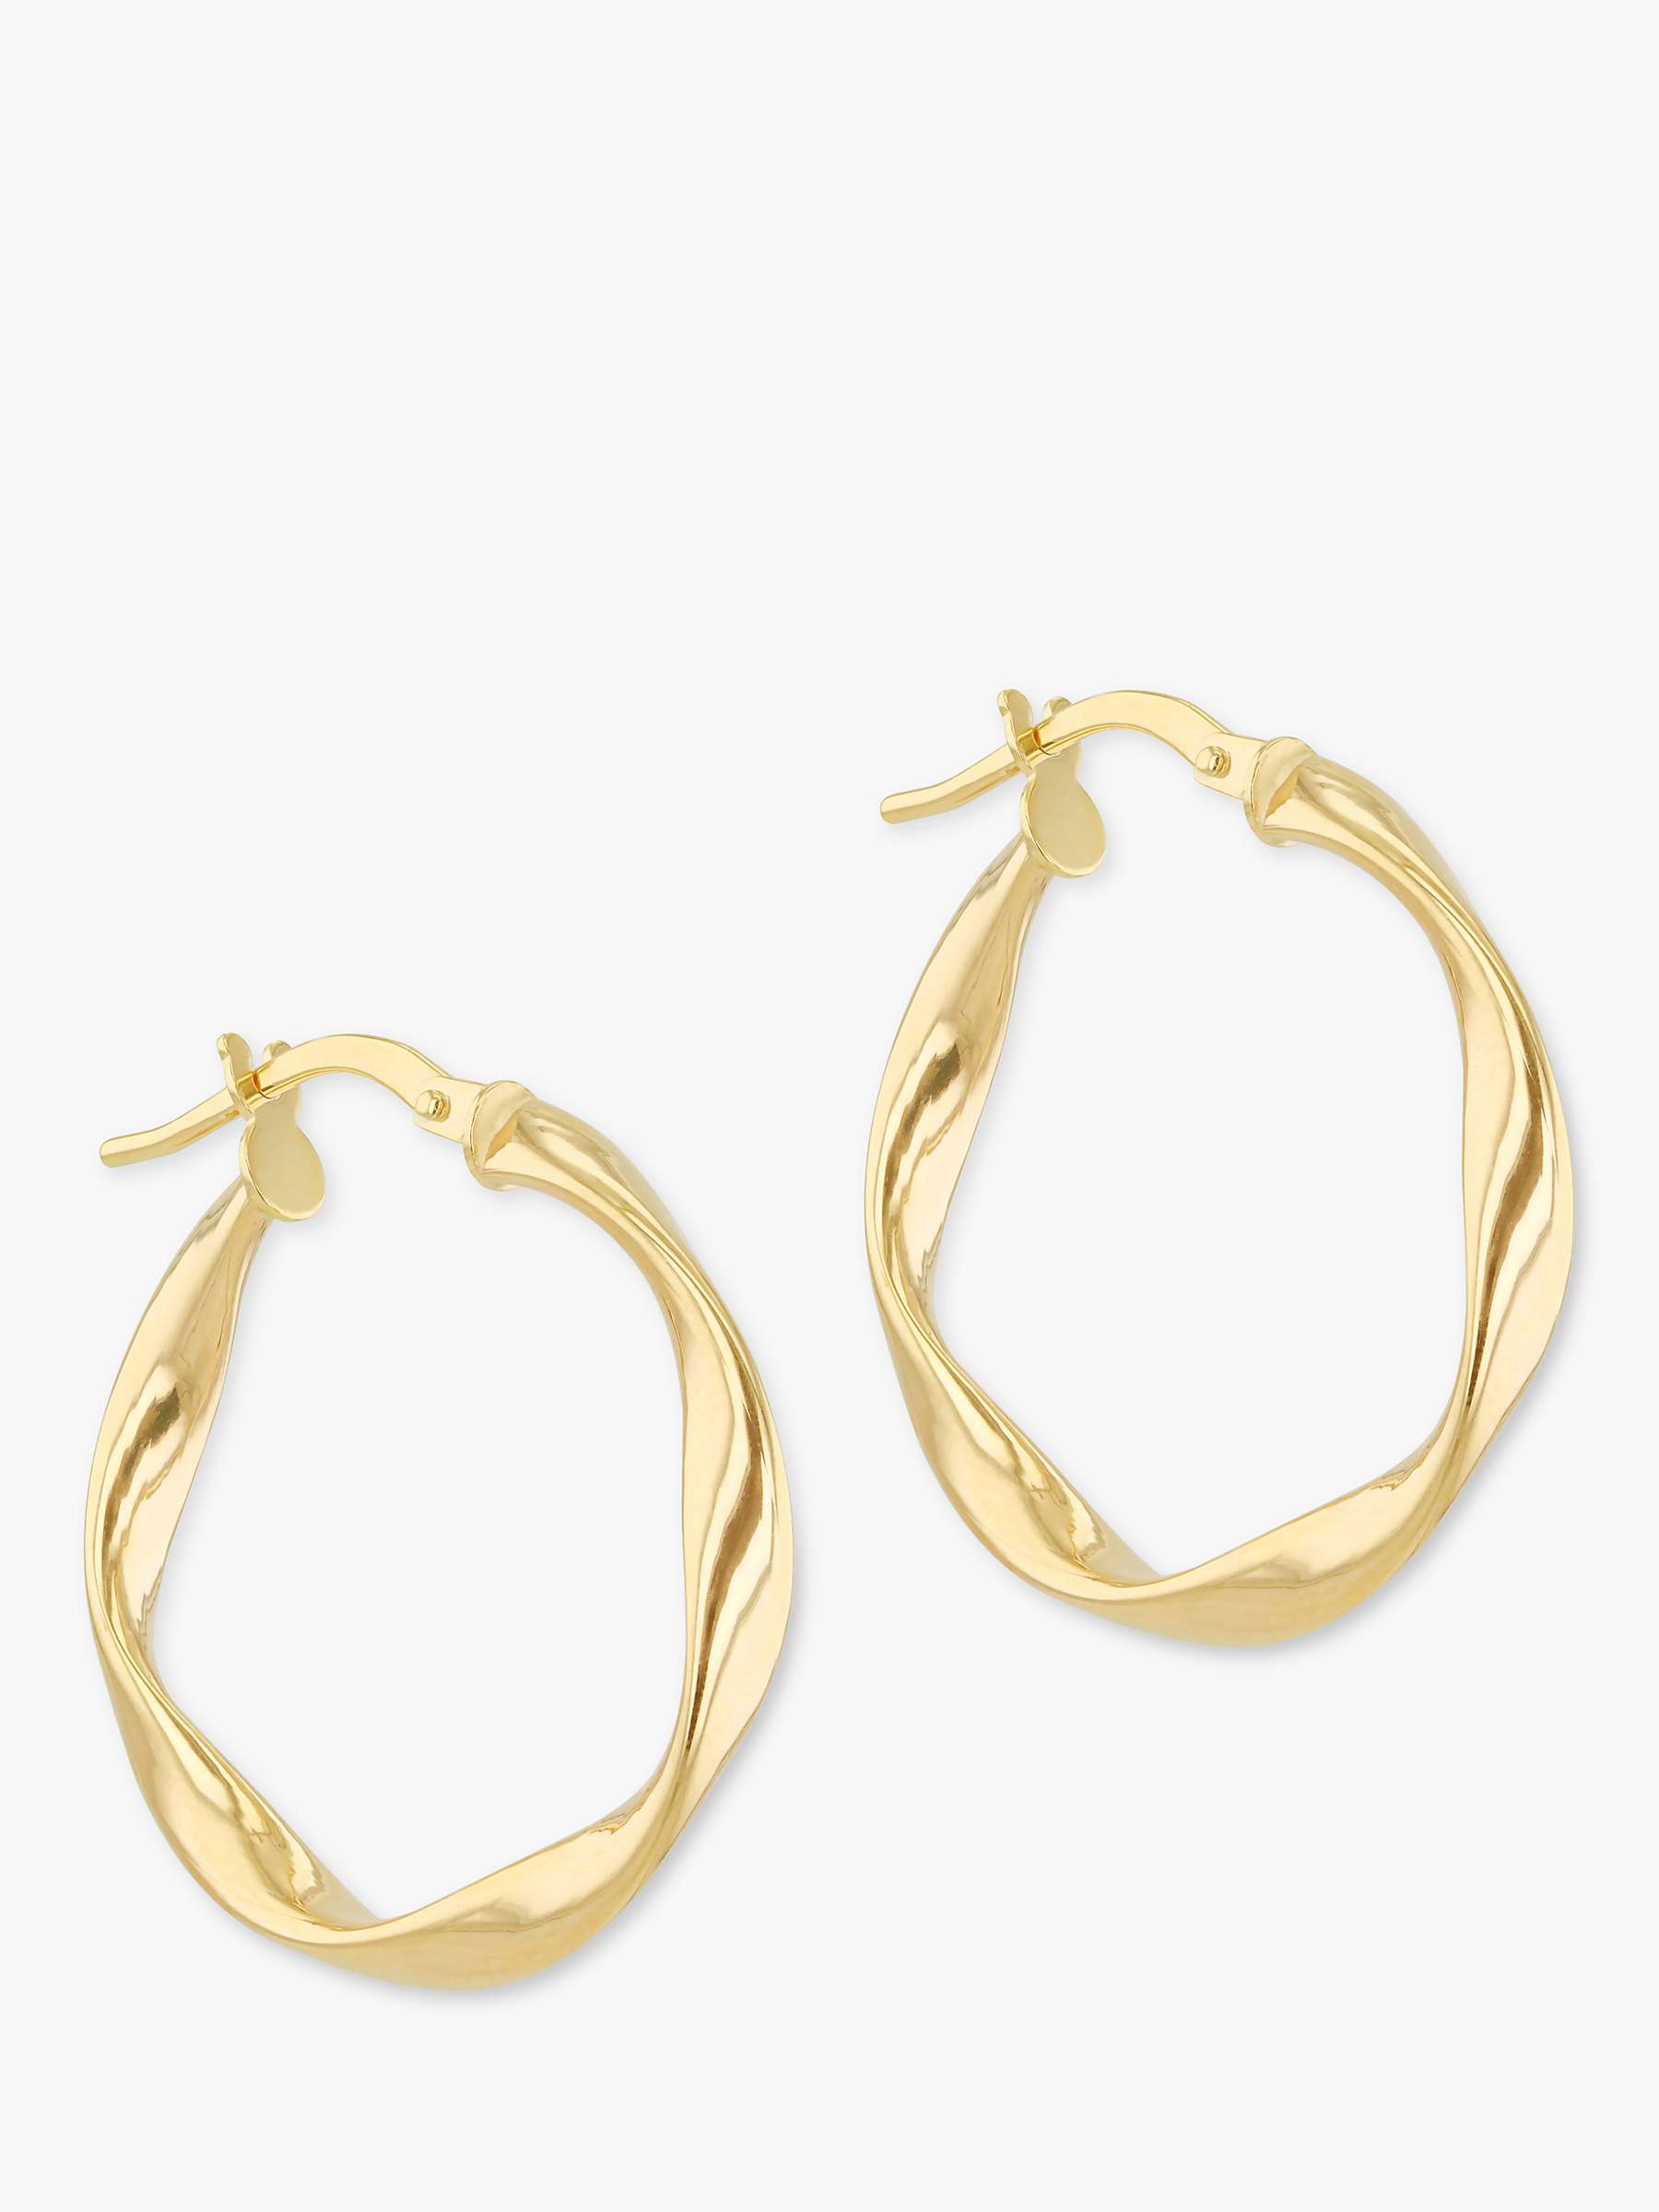 Buy IBB 9ct Gold Twist Hoop Earrings, Gold Online at johnlewis.com